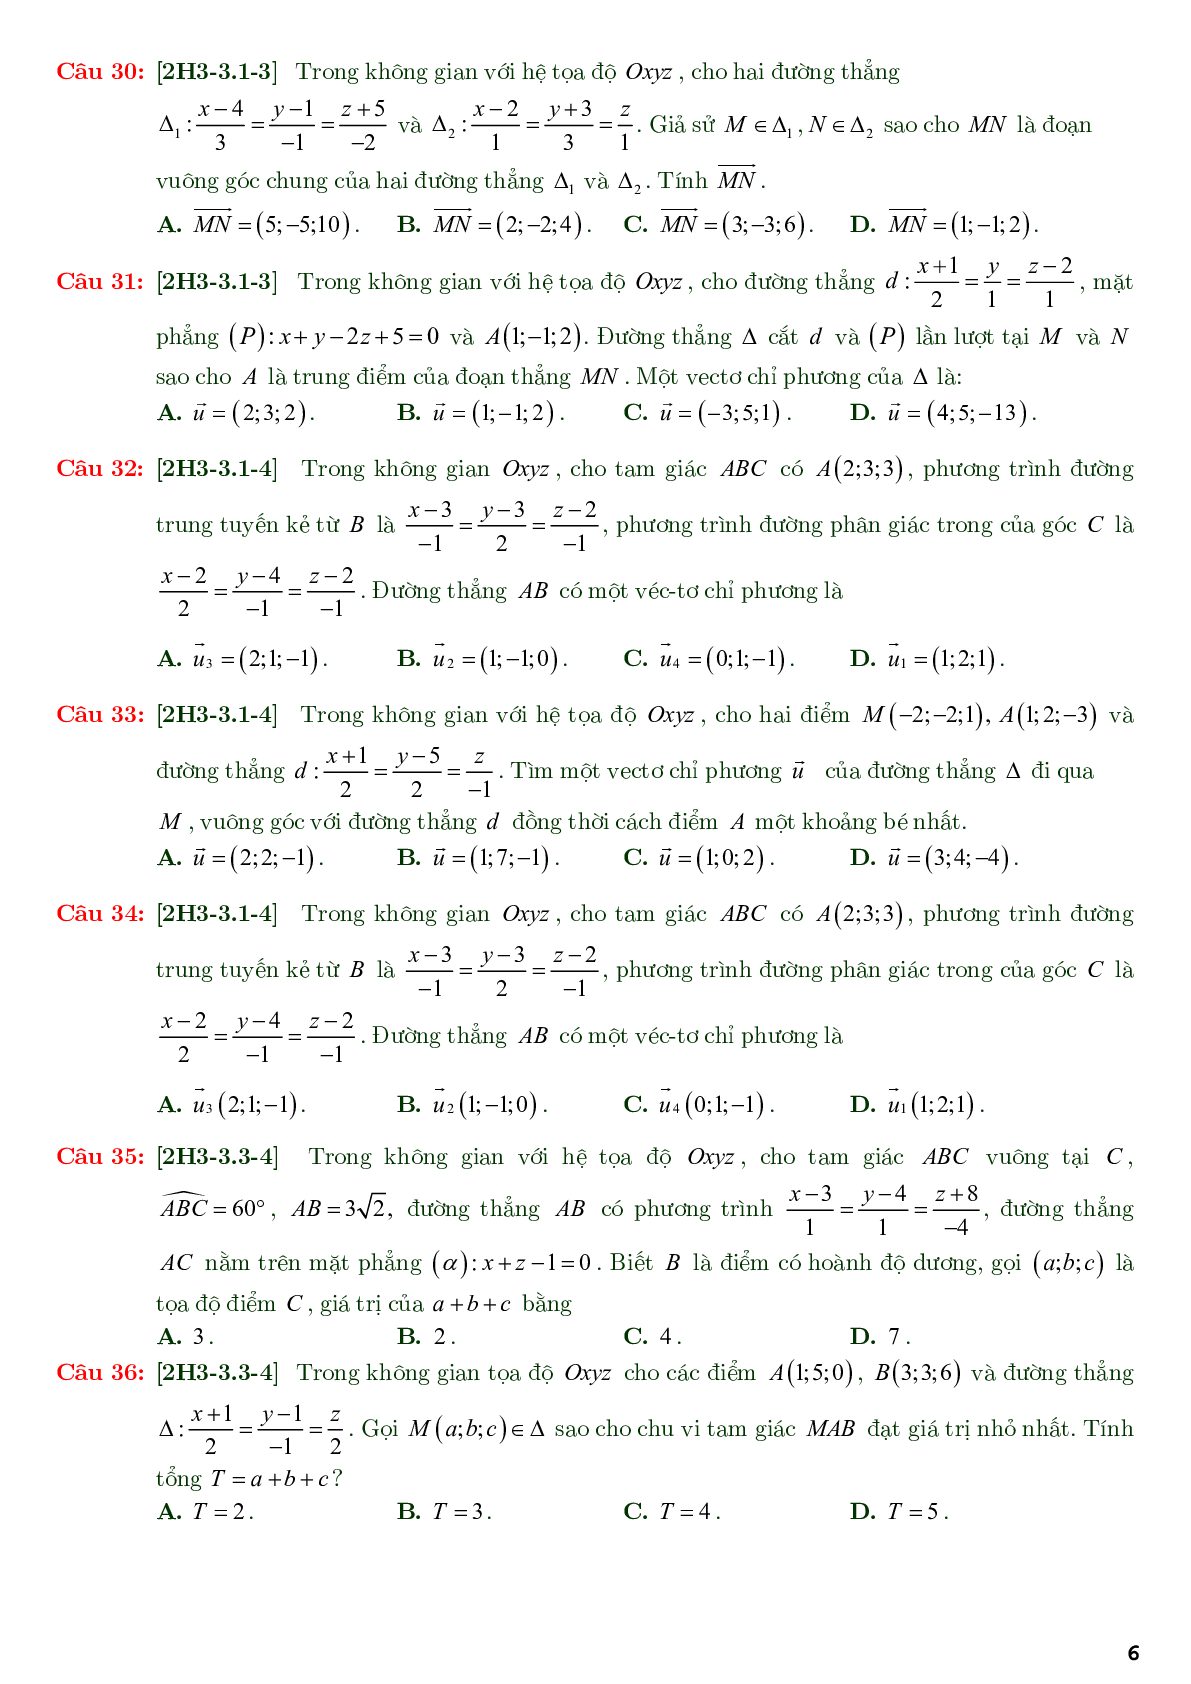 86 câu trắc nghiệm về phương trình đường thẳng nâng cao - có đáp án chi tiết (trang 6)